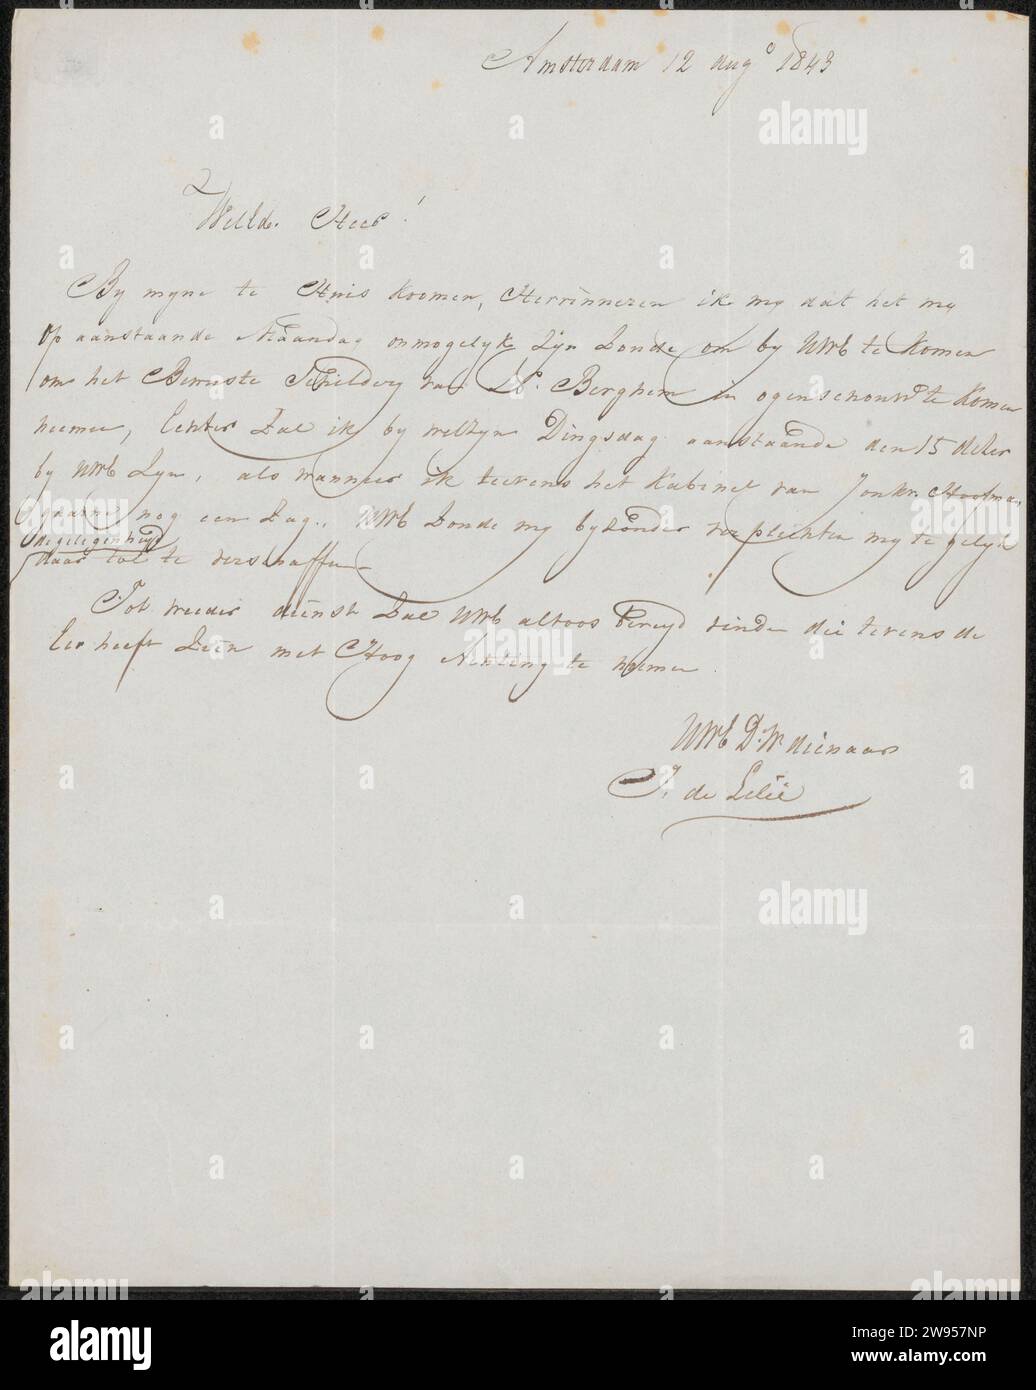 Lettre à Anonymous, Jan Adriaan Antonie de Lelie, 1843 lettre Amsterdam paper. écriture à l'encre (procédés) / peinture à la plume (y compris l'illumination de livres, la peinture miniature) Banque D'Images